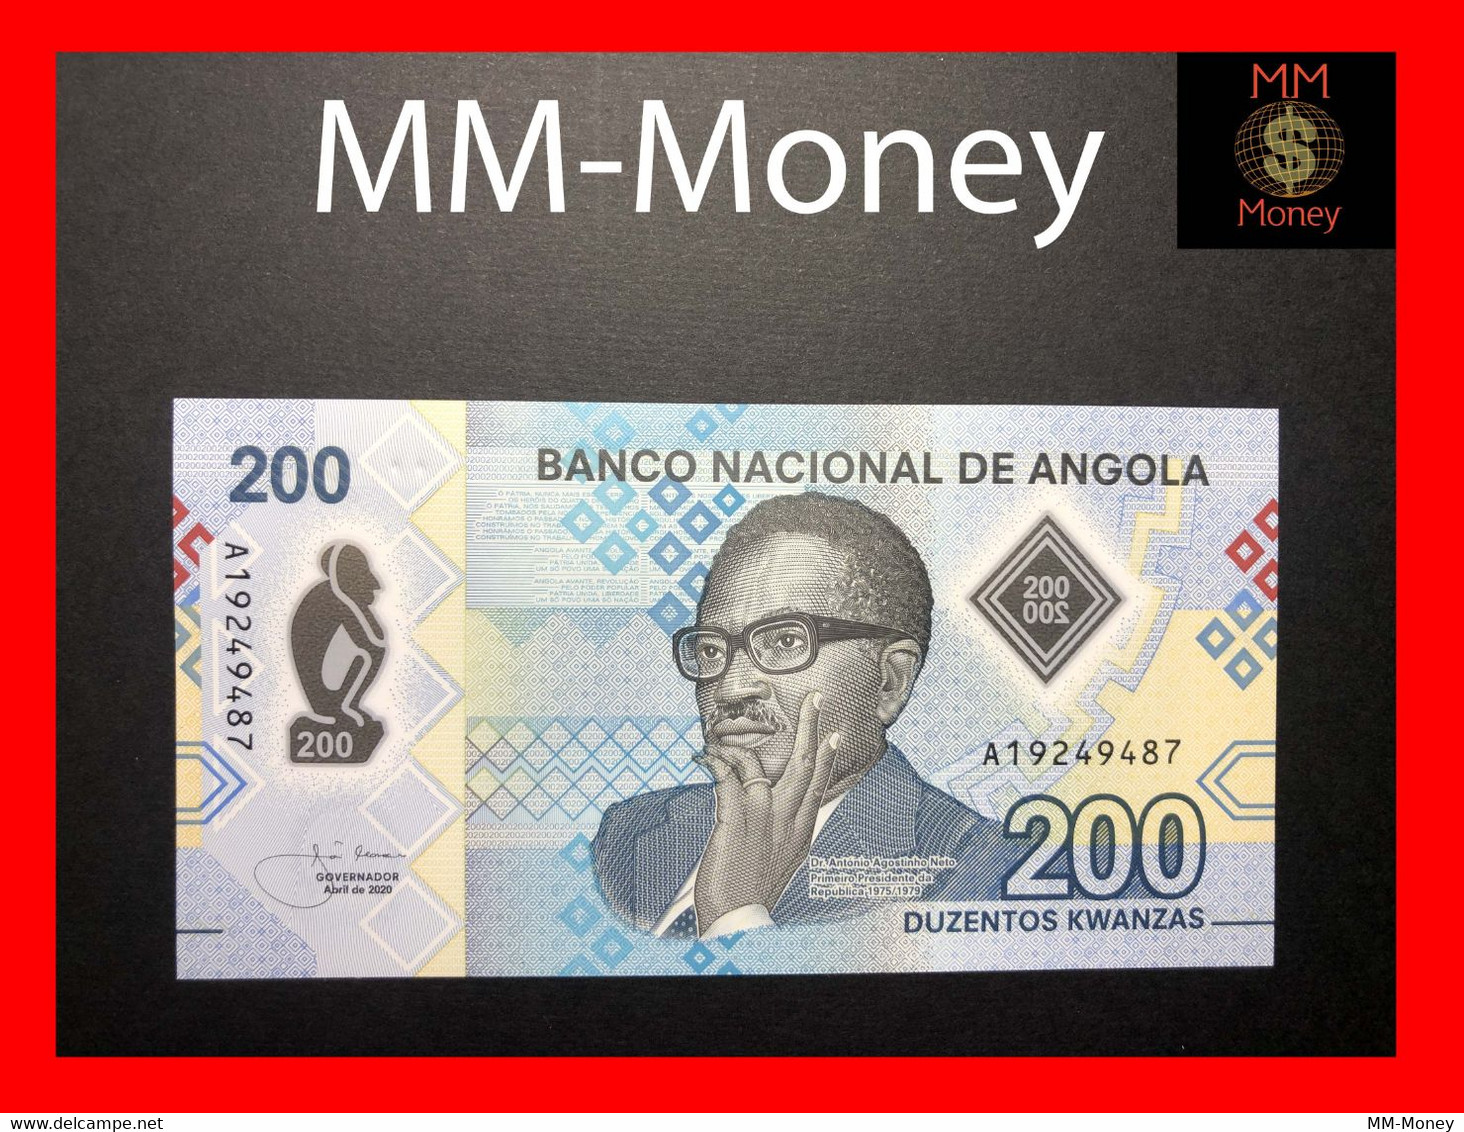 ANGOLA 200 Kwanzas  4.2020  P. 160  New   Polymer UNC   [MM-Money] - Angola